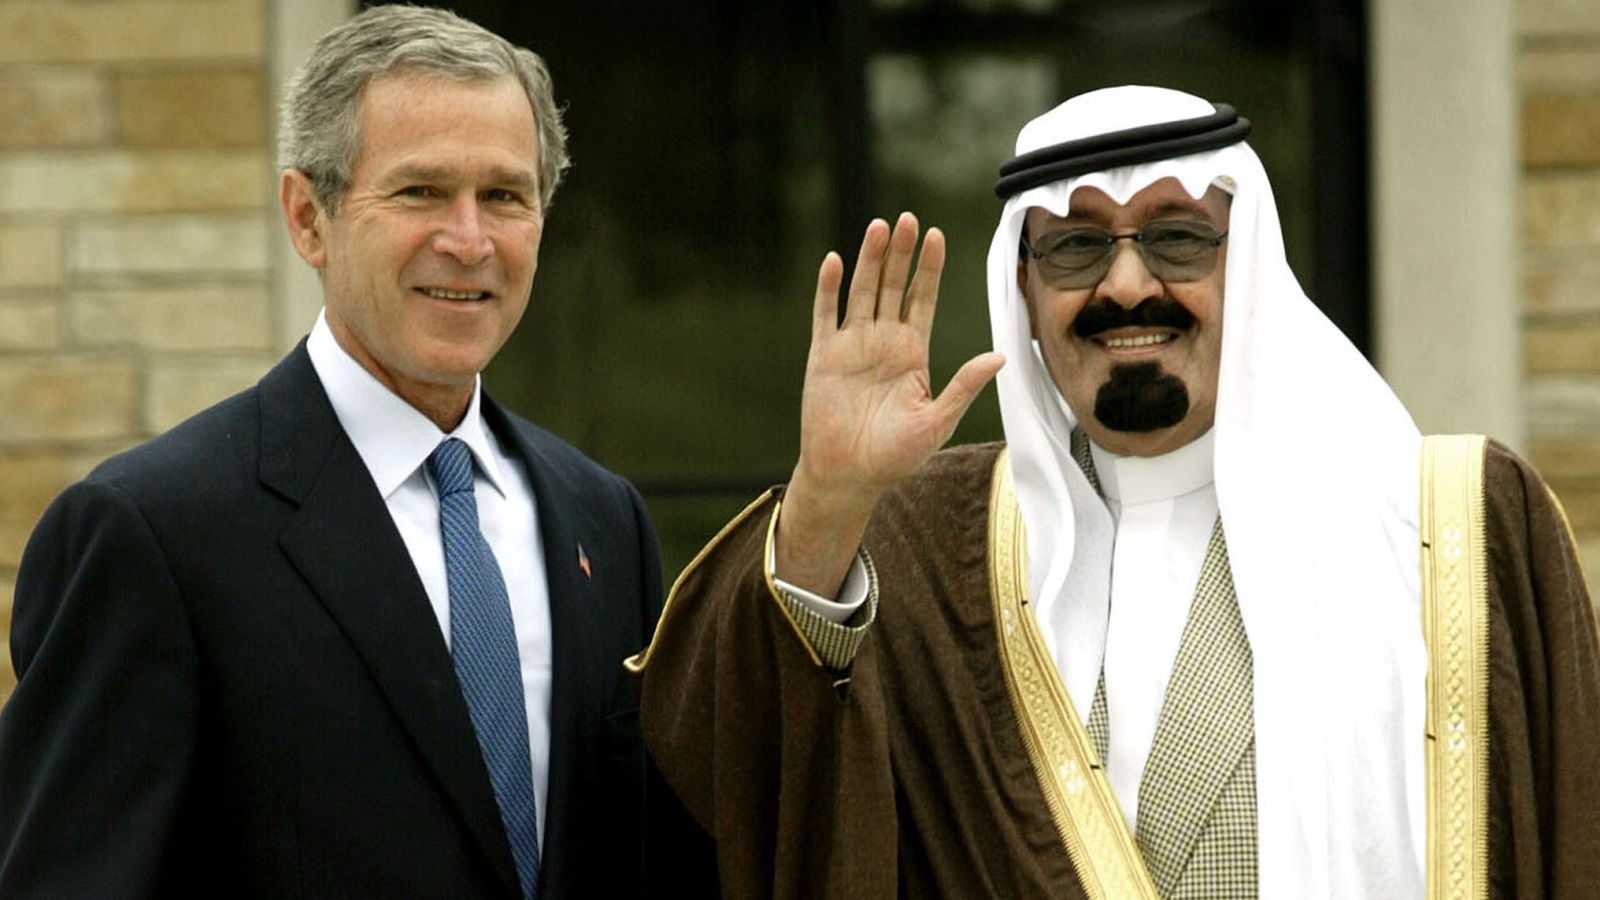  الأمير عبدالله بن عبدالعزيز -وقتها- أثناء زيارته الرئيس الأميركي بوش في 2002 (رويترز)